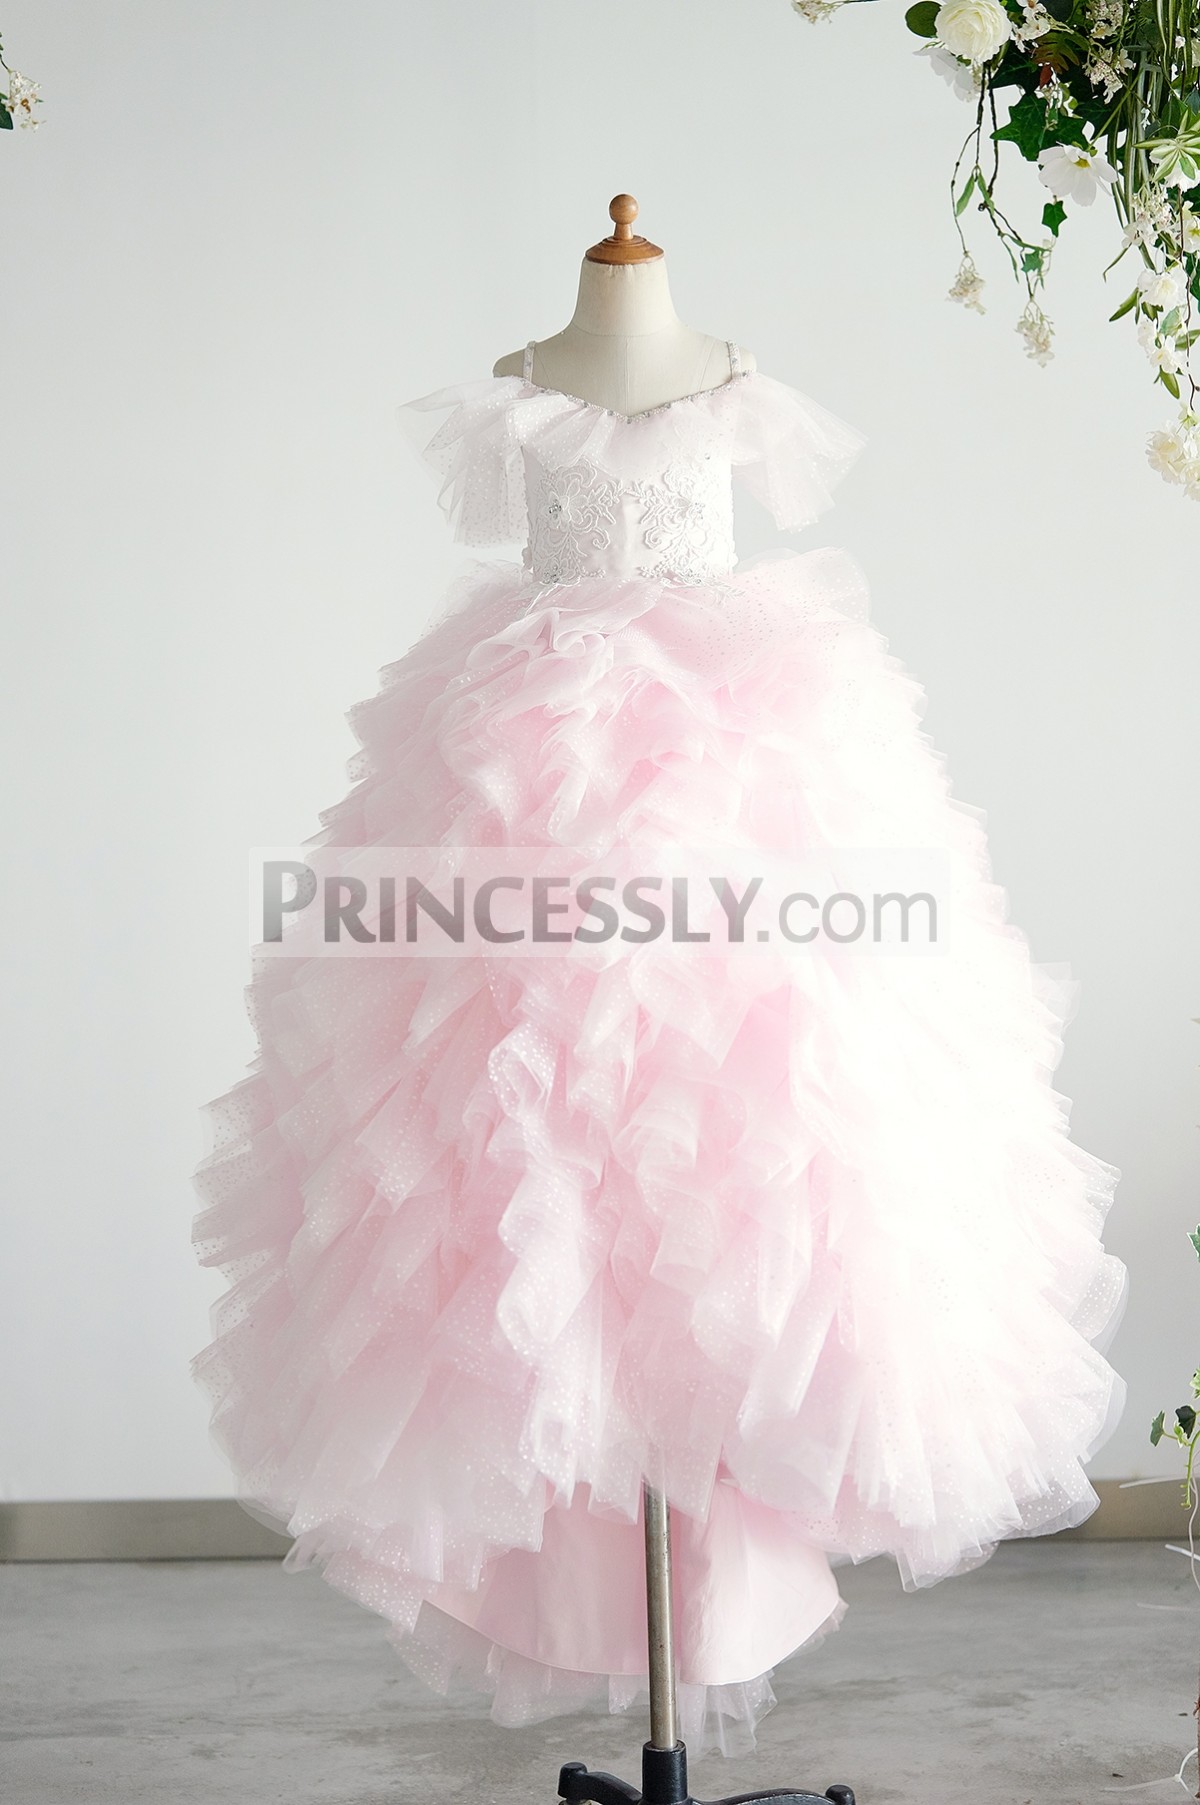 Princessly.com-K1004012-Off Shoulder Pink Polka Dot Lace Tulle Ball Gown Wedding Flower Girl Dress-31